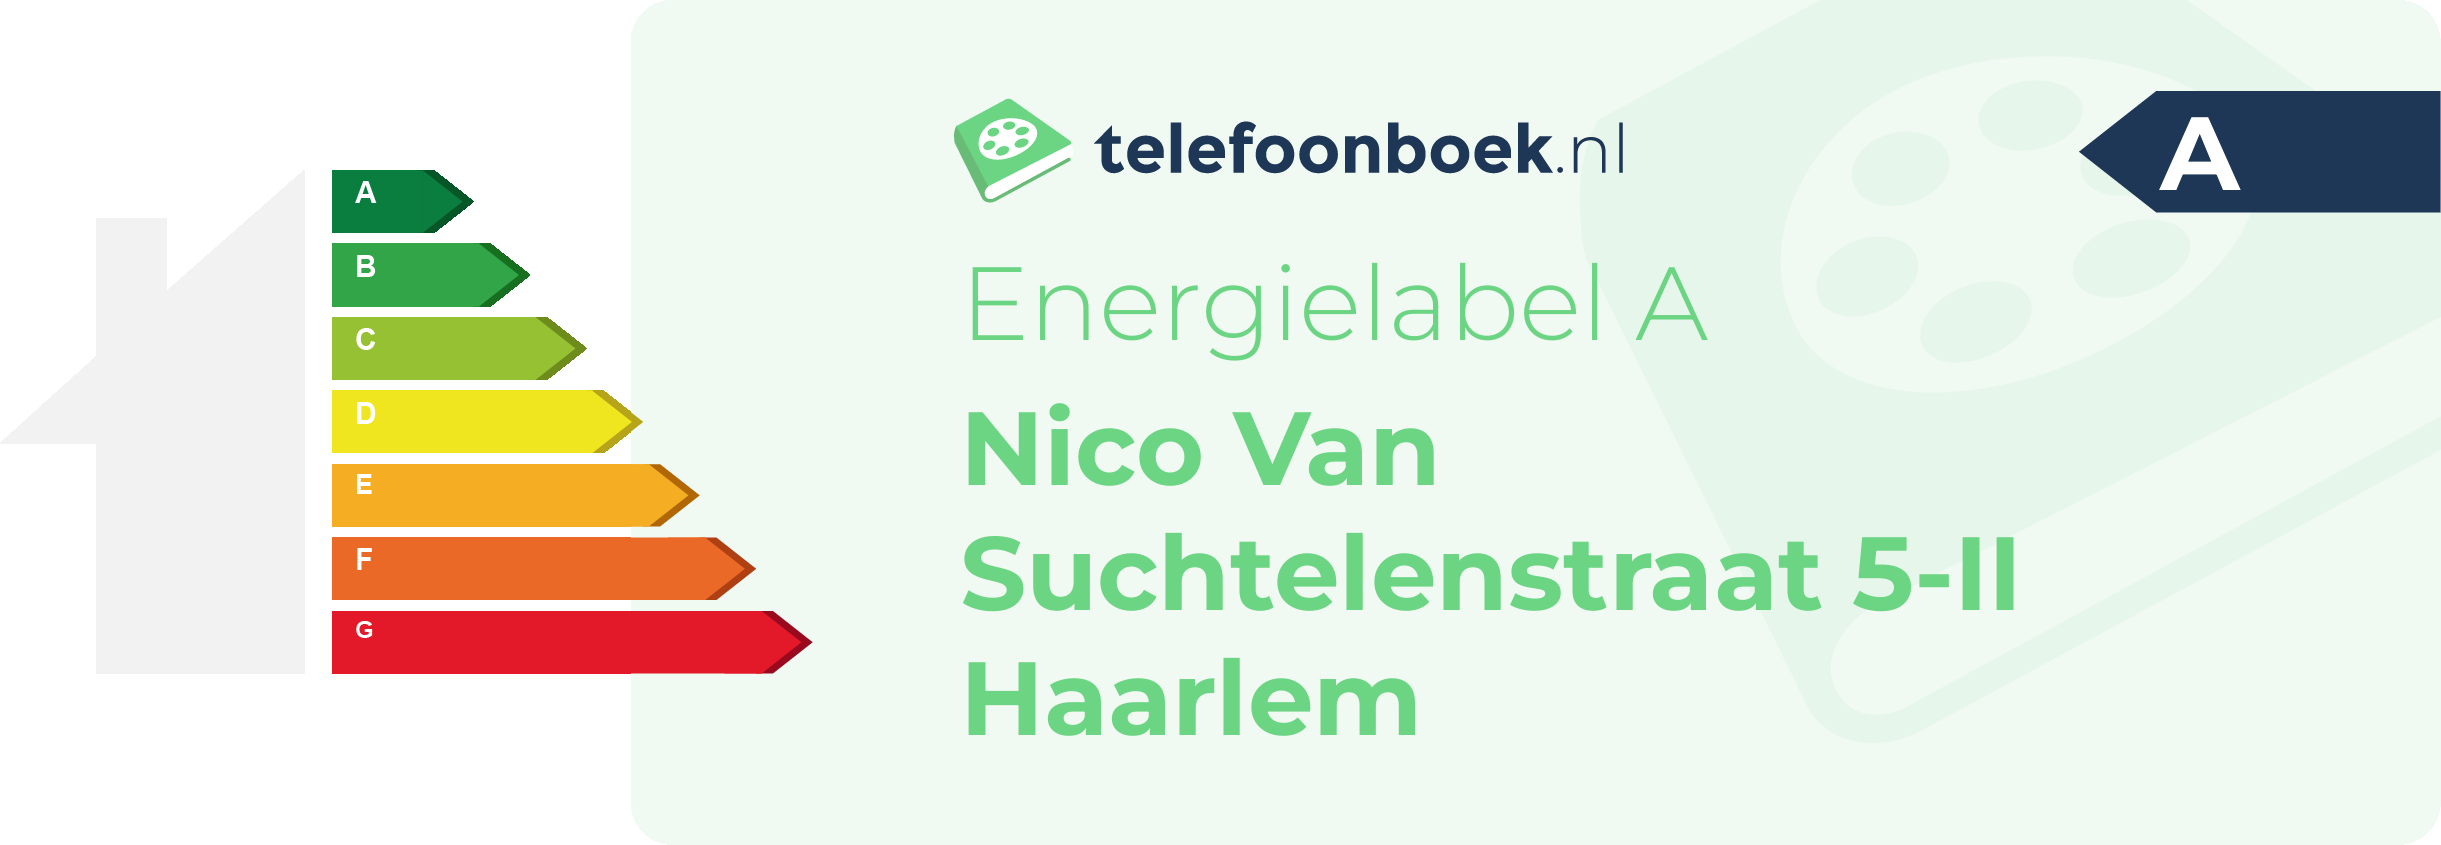 Energielabel Nico Van Suchtelenstraat 5-II Haarlem